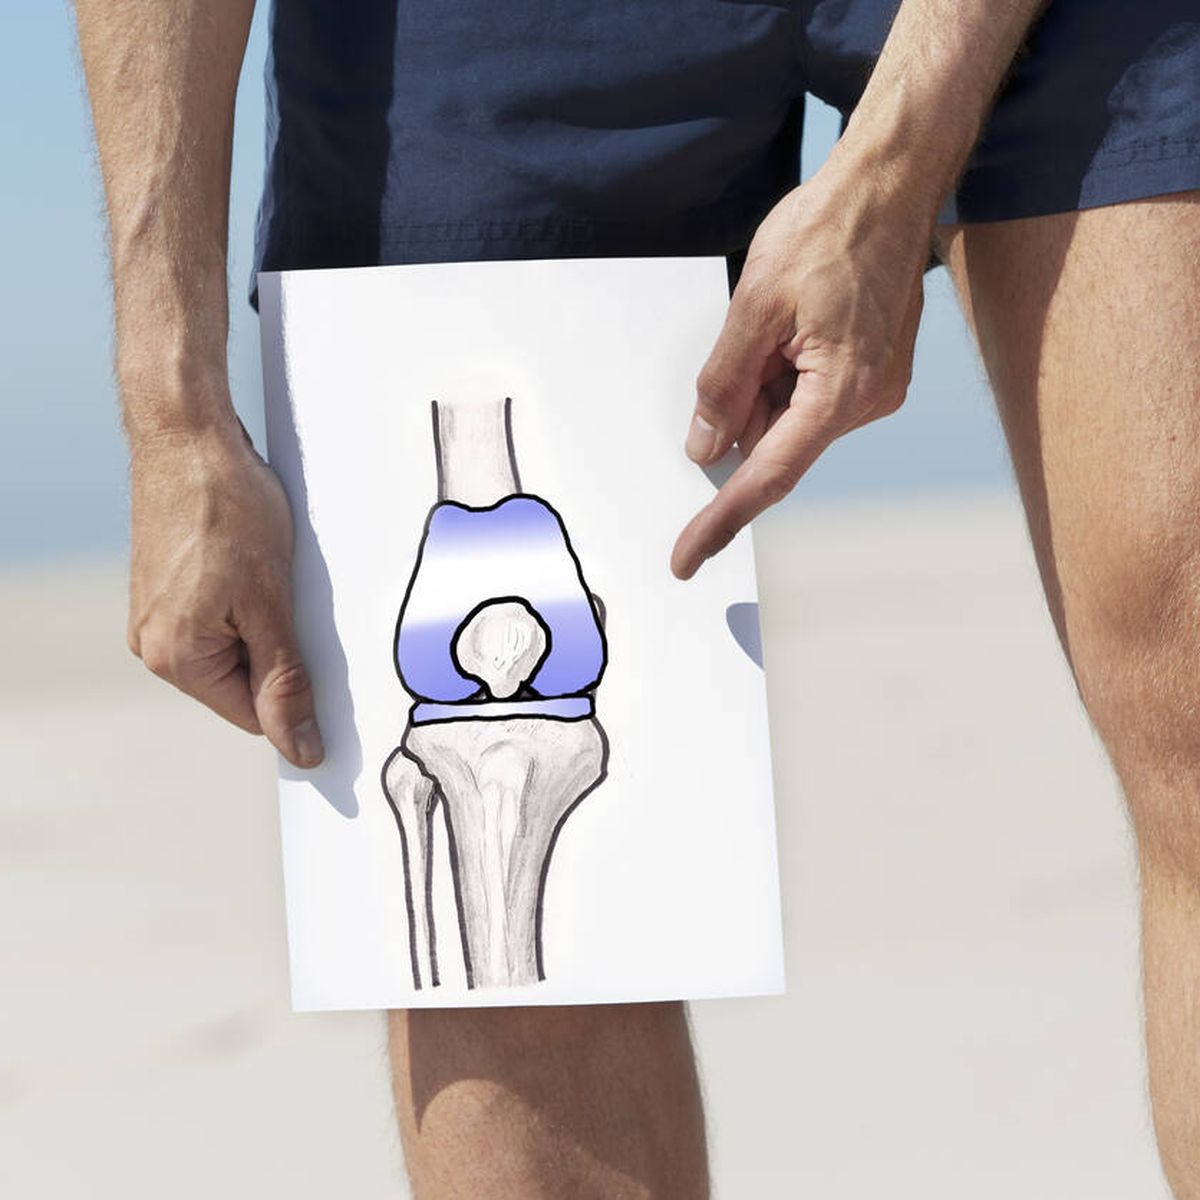 Cuándo operar la artrosis de rodilla?